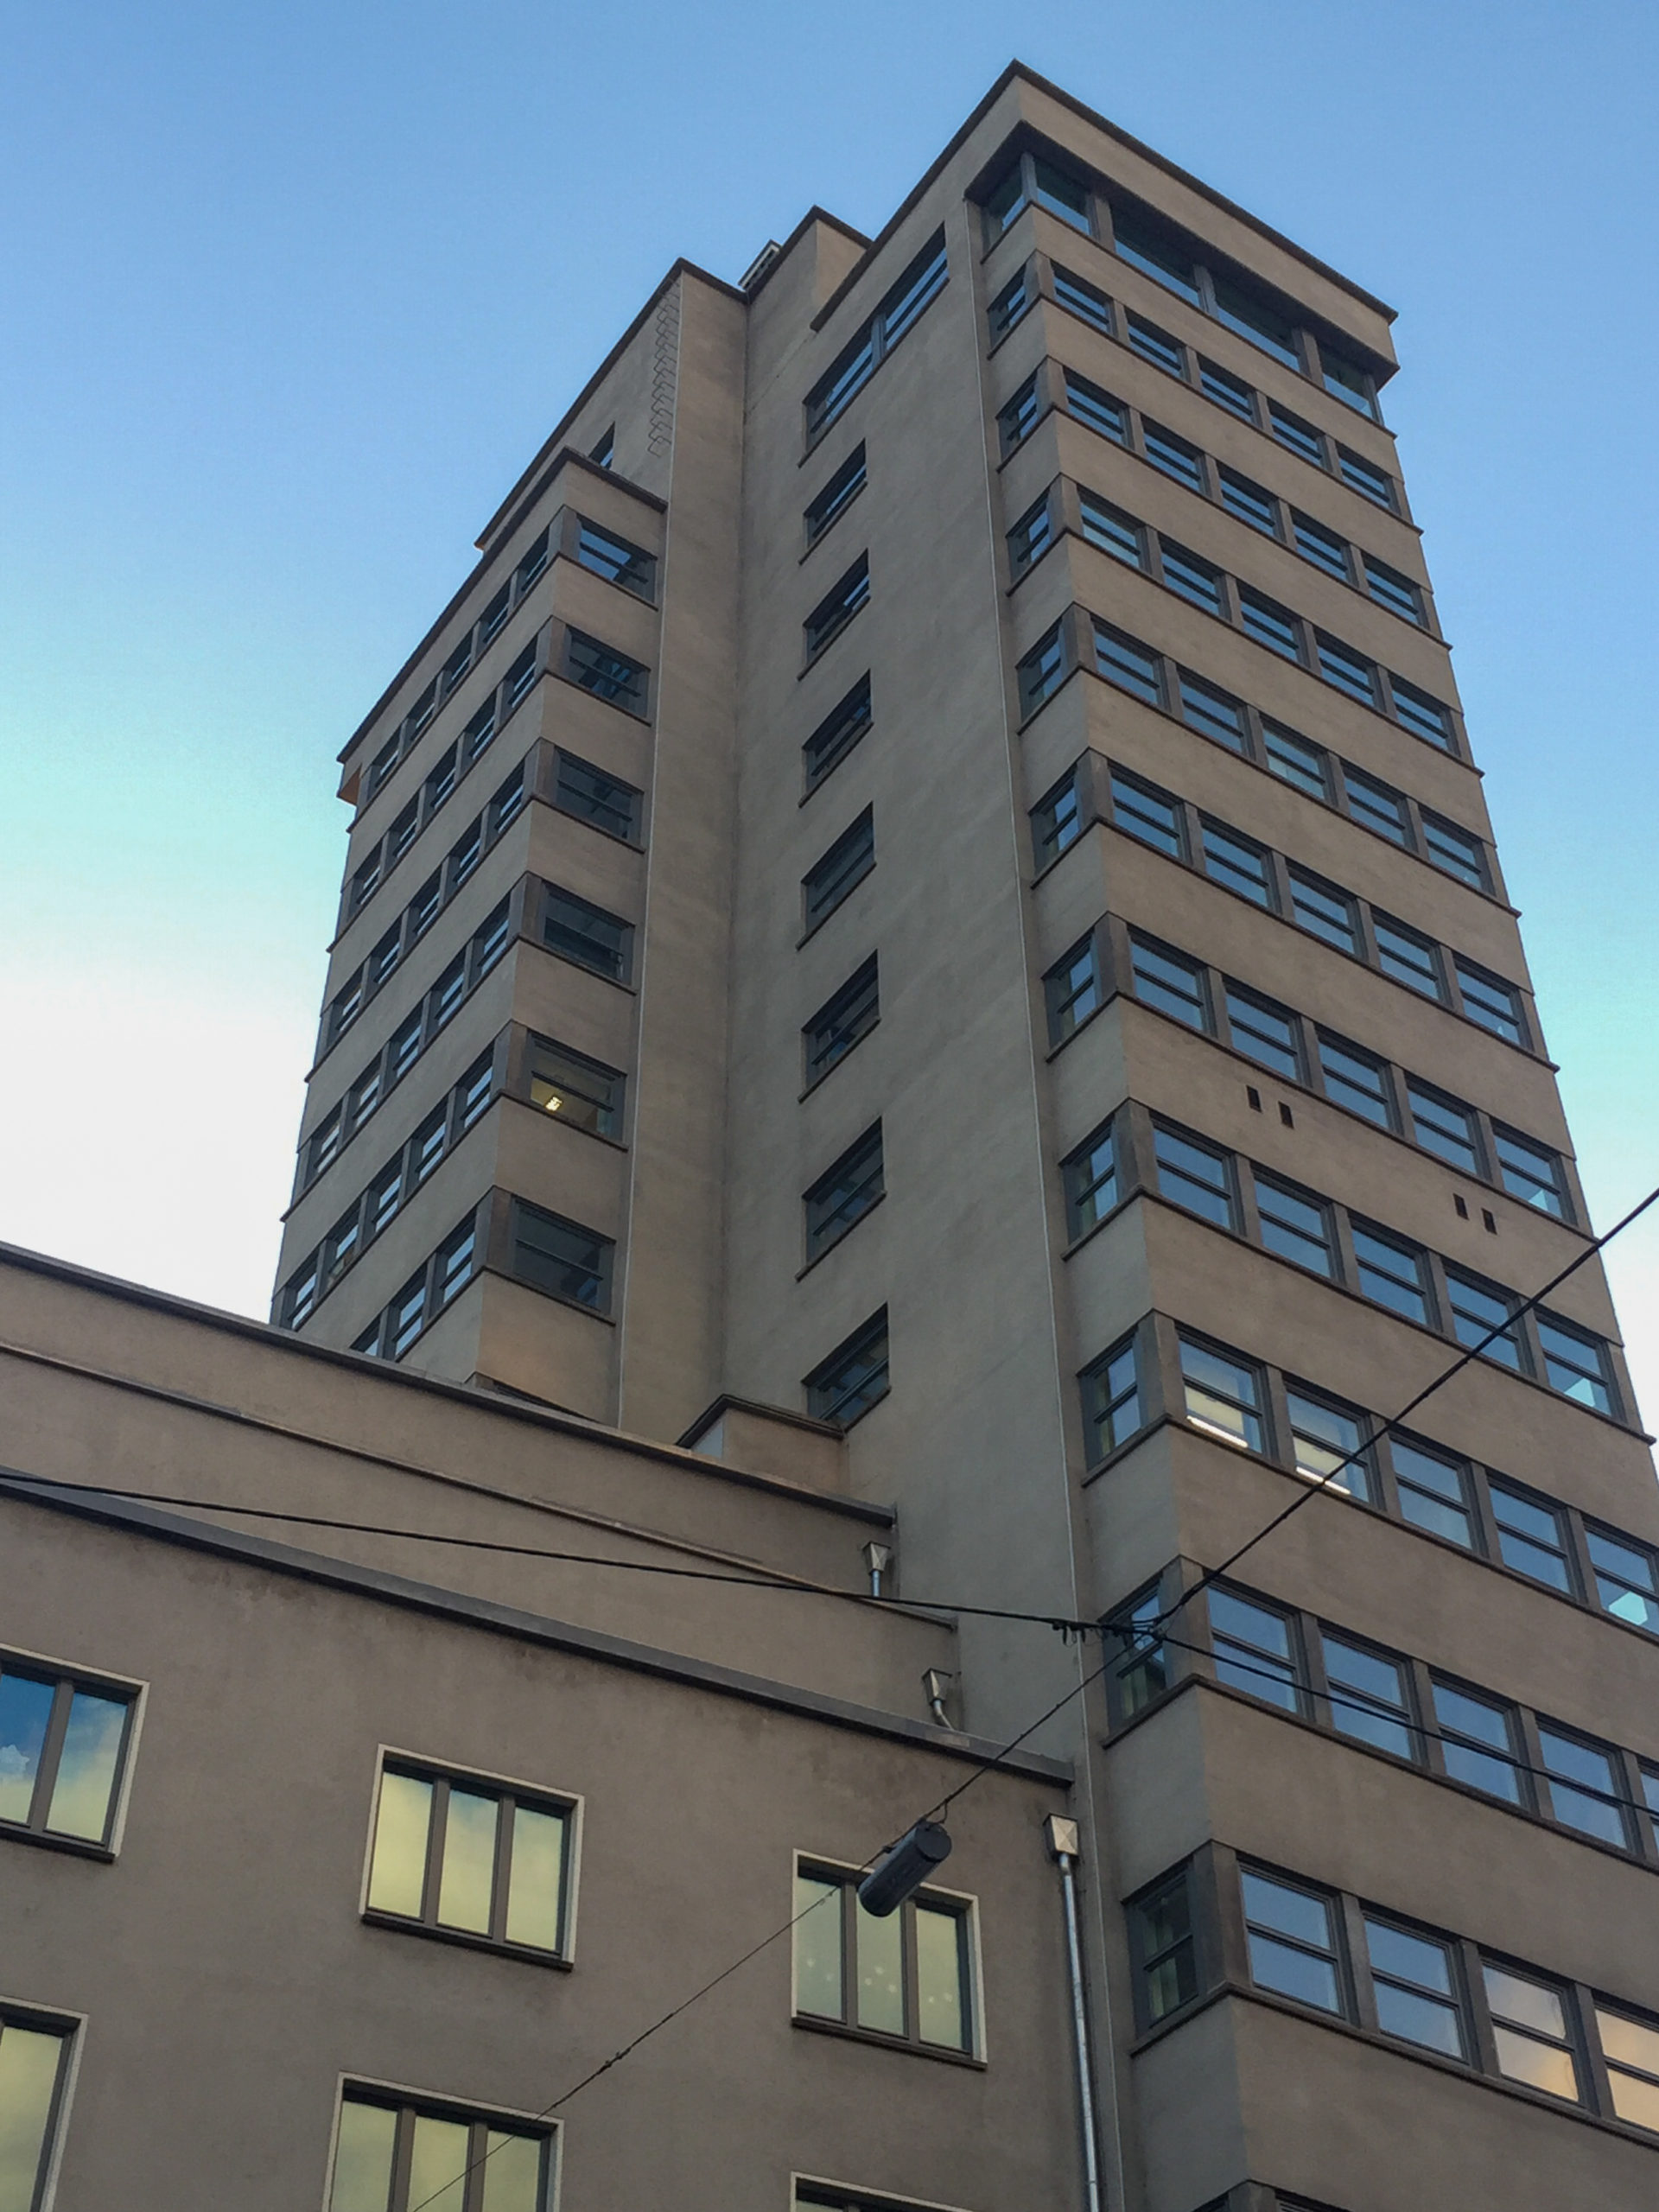 Tagblatt Turm, 1924-1928. Architekt: Ernst Otto Oßwald